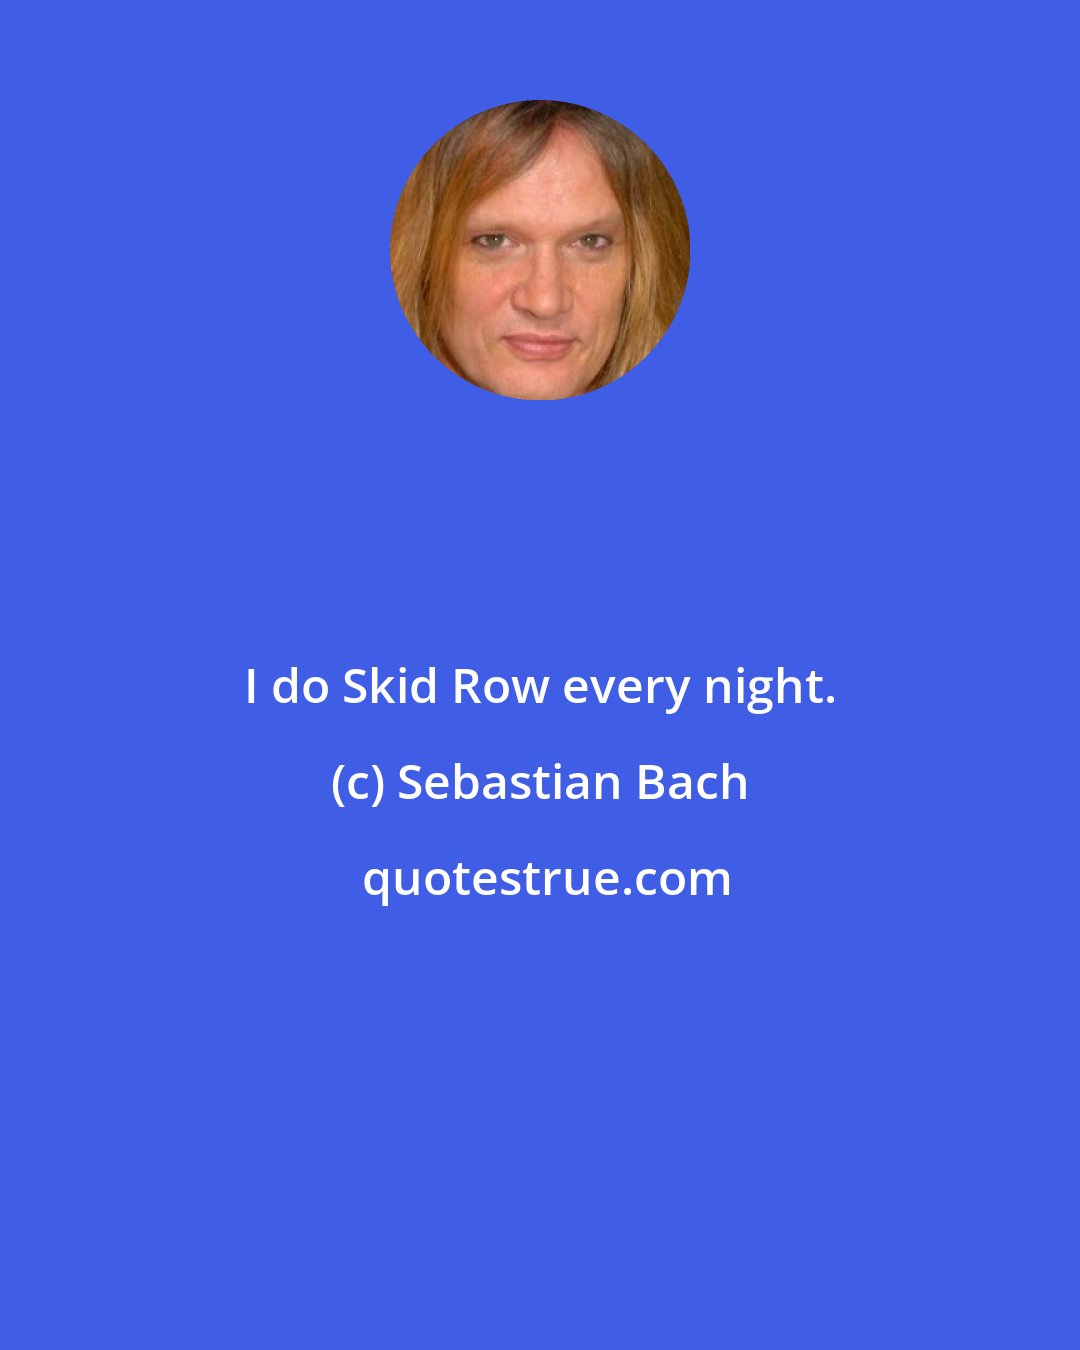 Sebastian Bach: I do Skid Row every night.